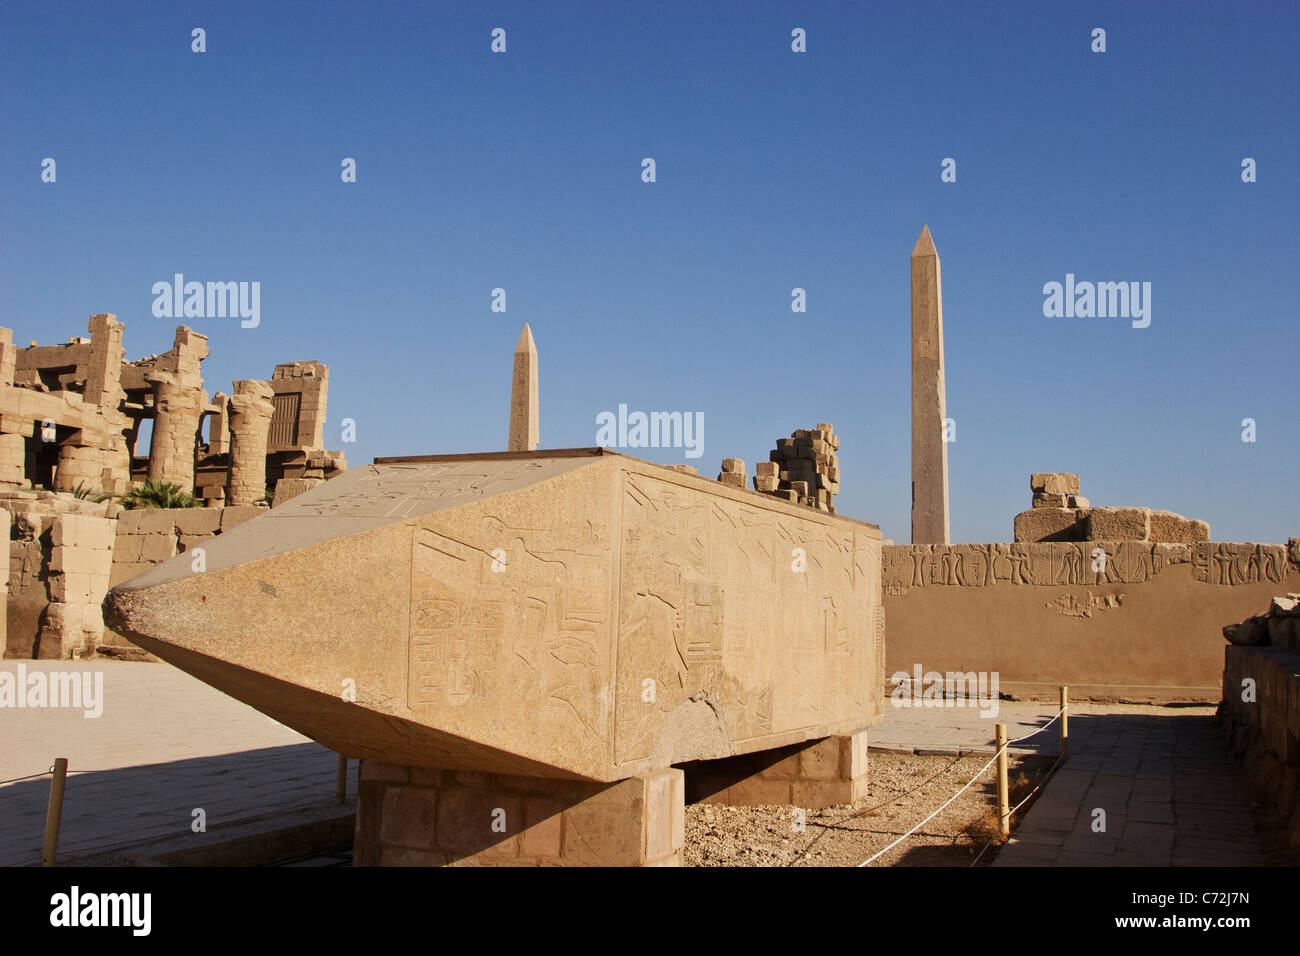 Hatshepsut obelisks, Karnak Temple, Luxor, Egypt. Stock Photo